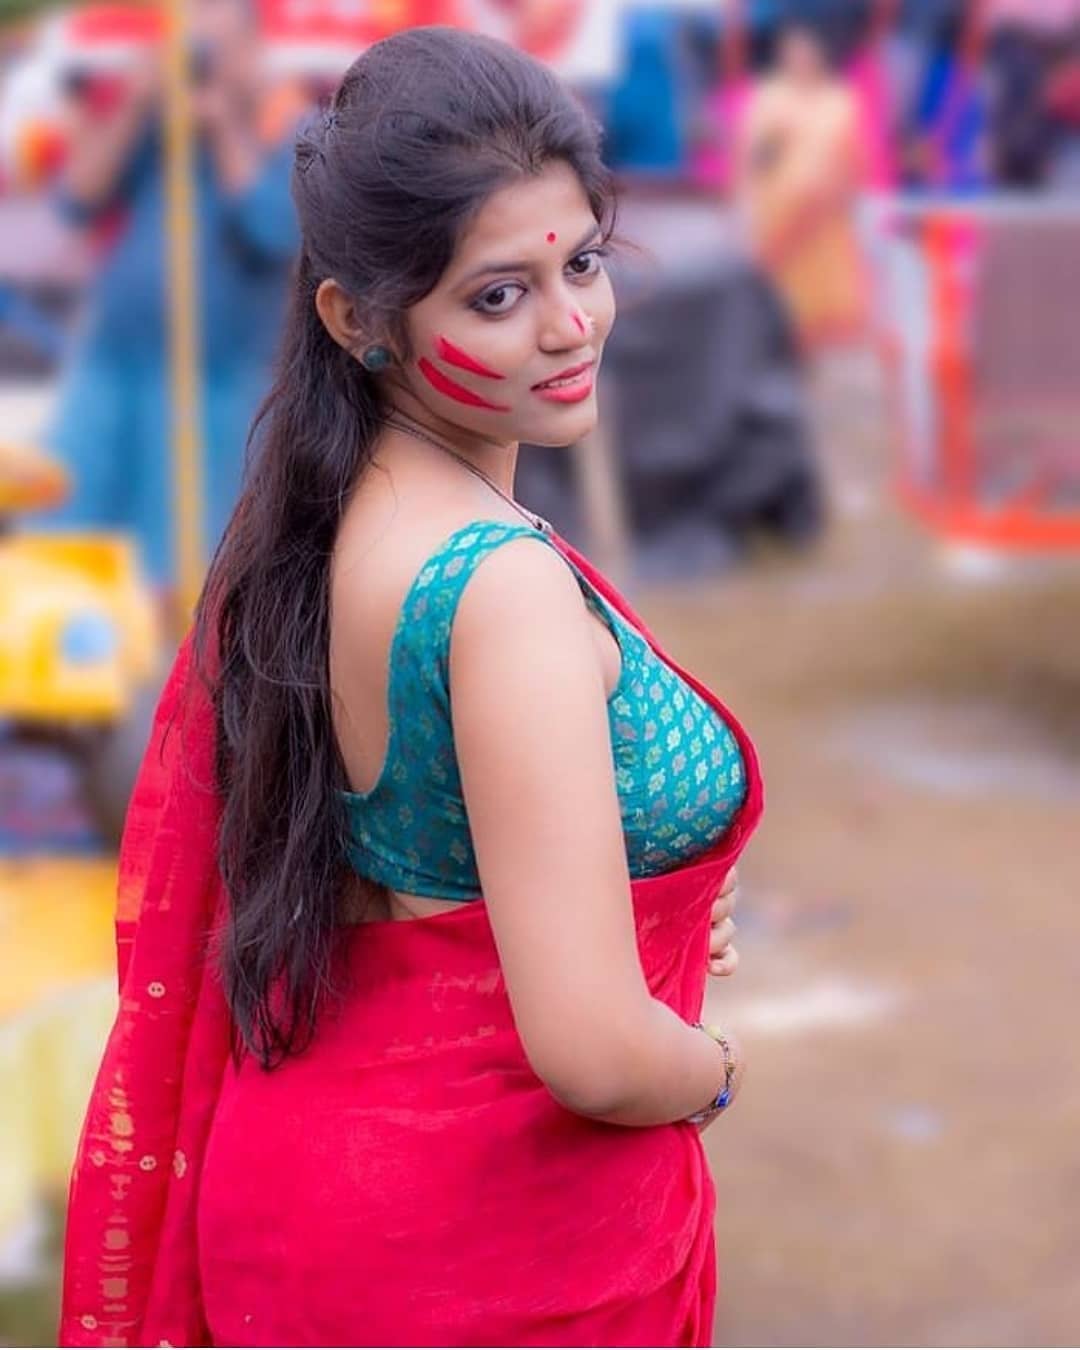 Hot Indian Women – Telegraph